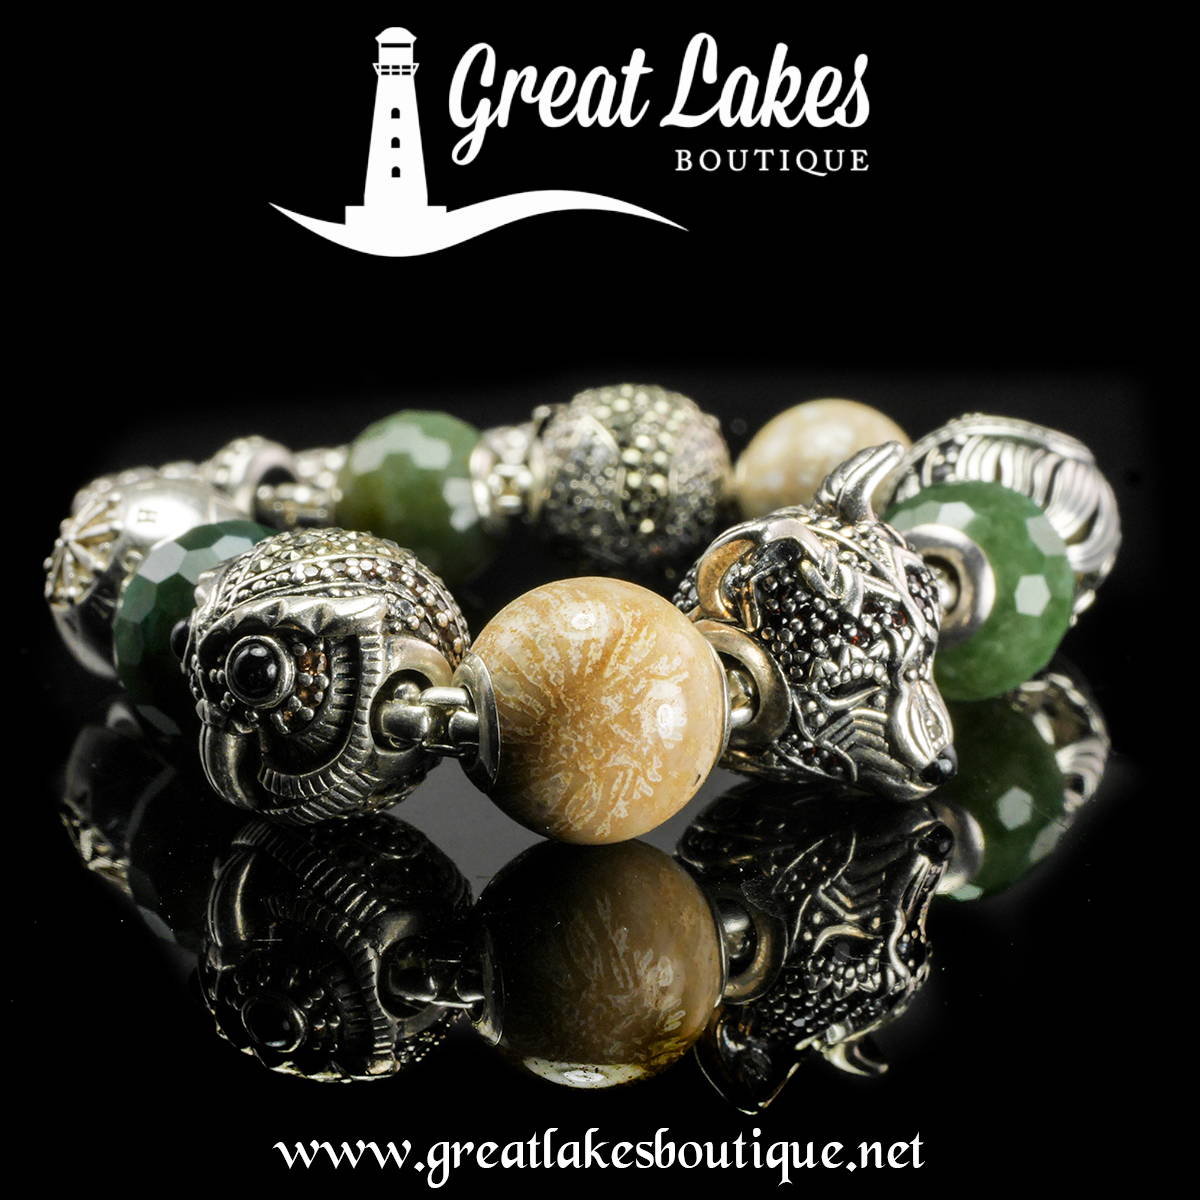 Thomas Sabo Karma Beads - Great Lakes Boutique